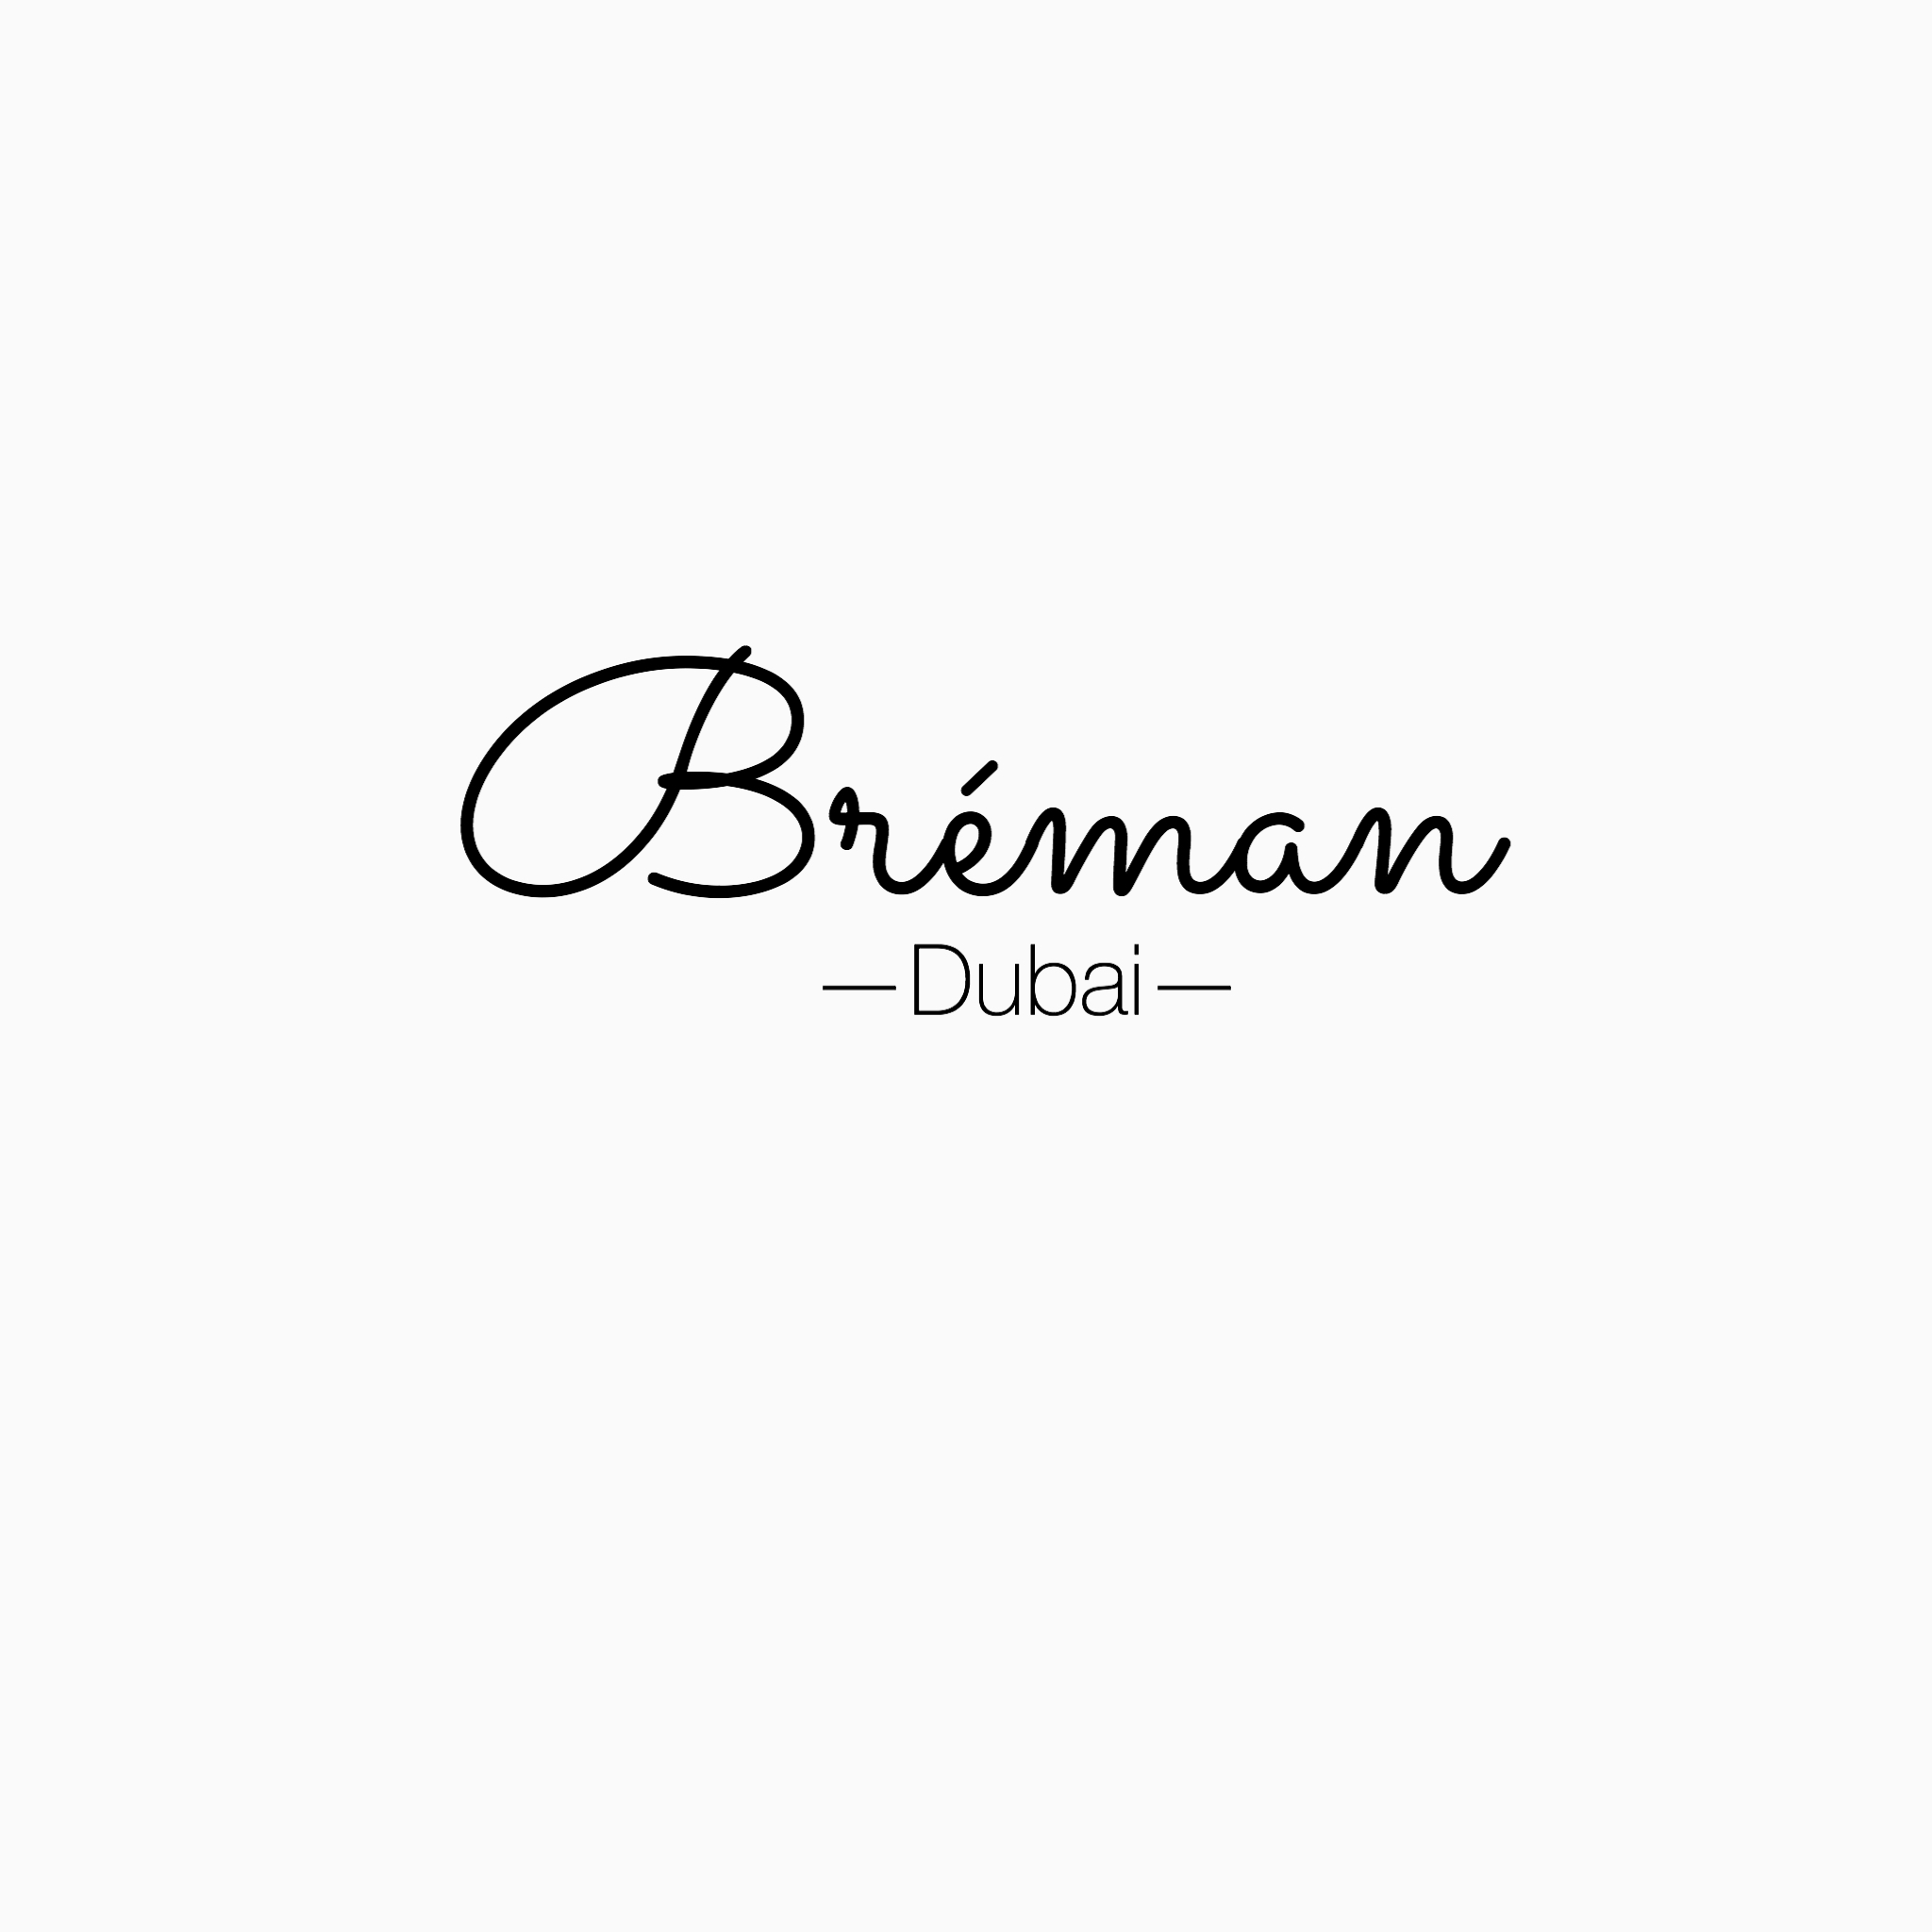 Breman Dubai